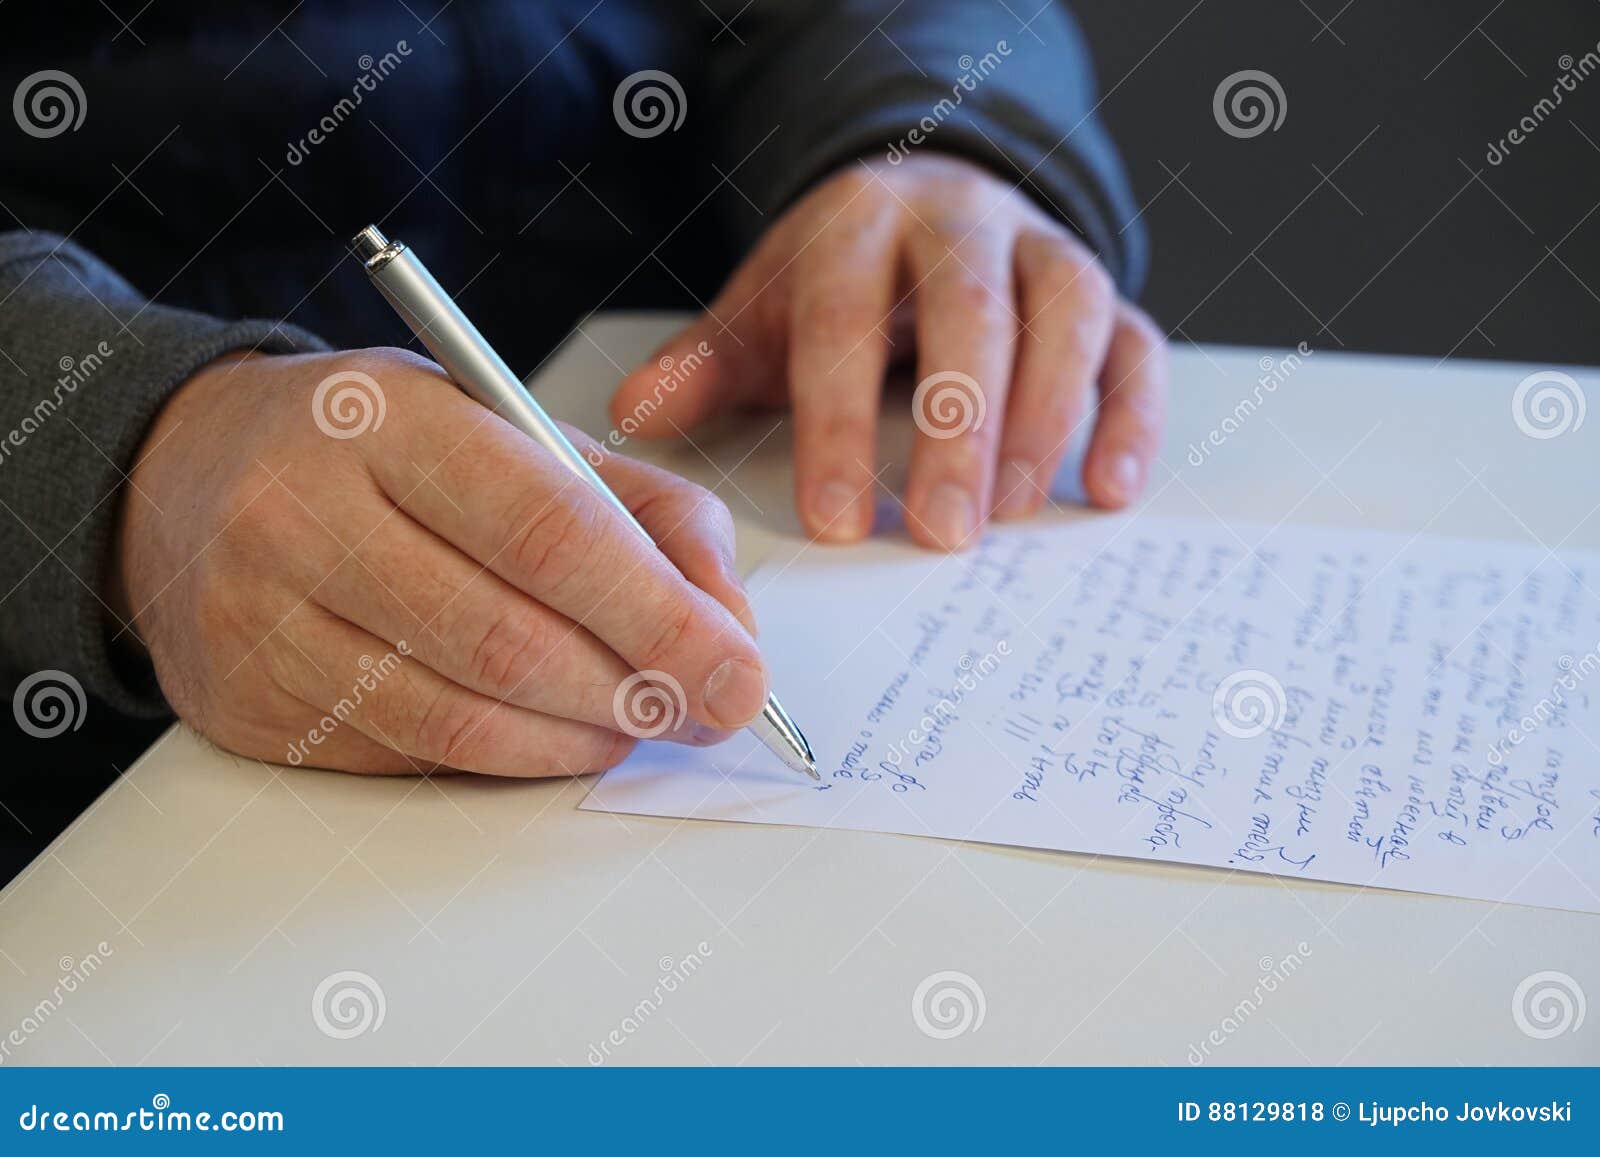 man write letter